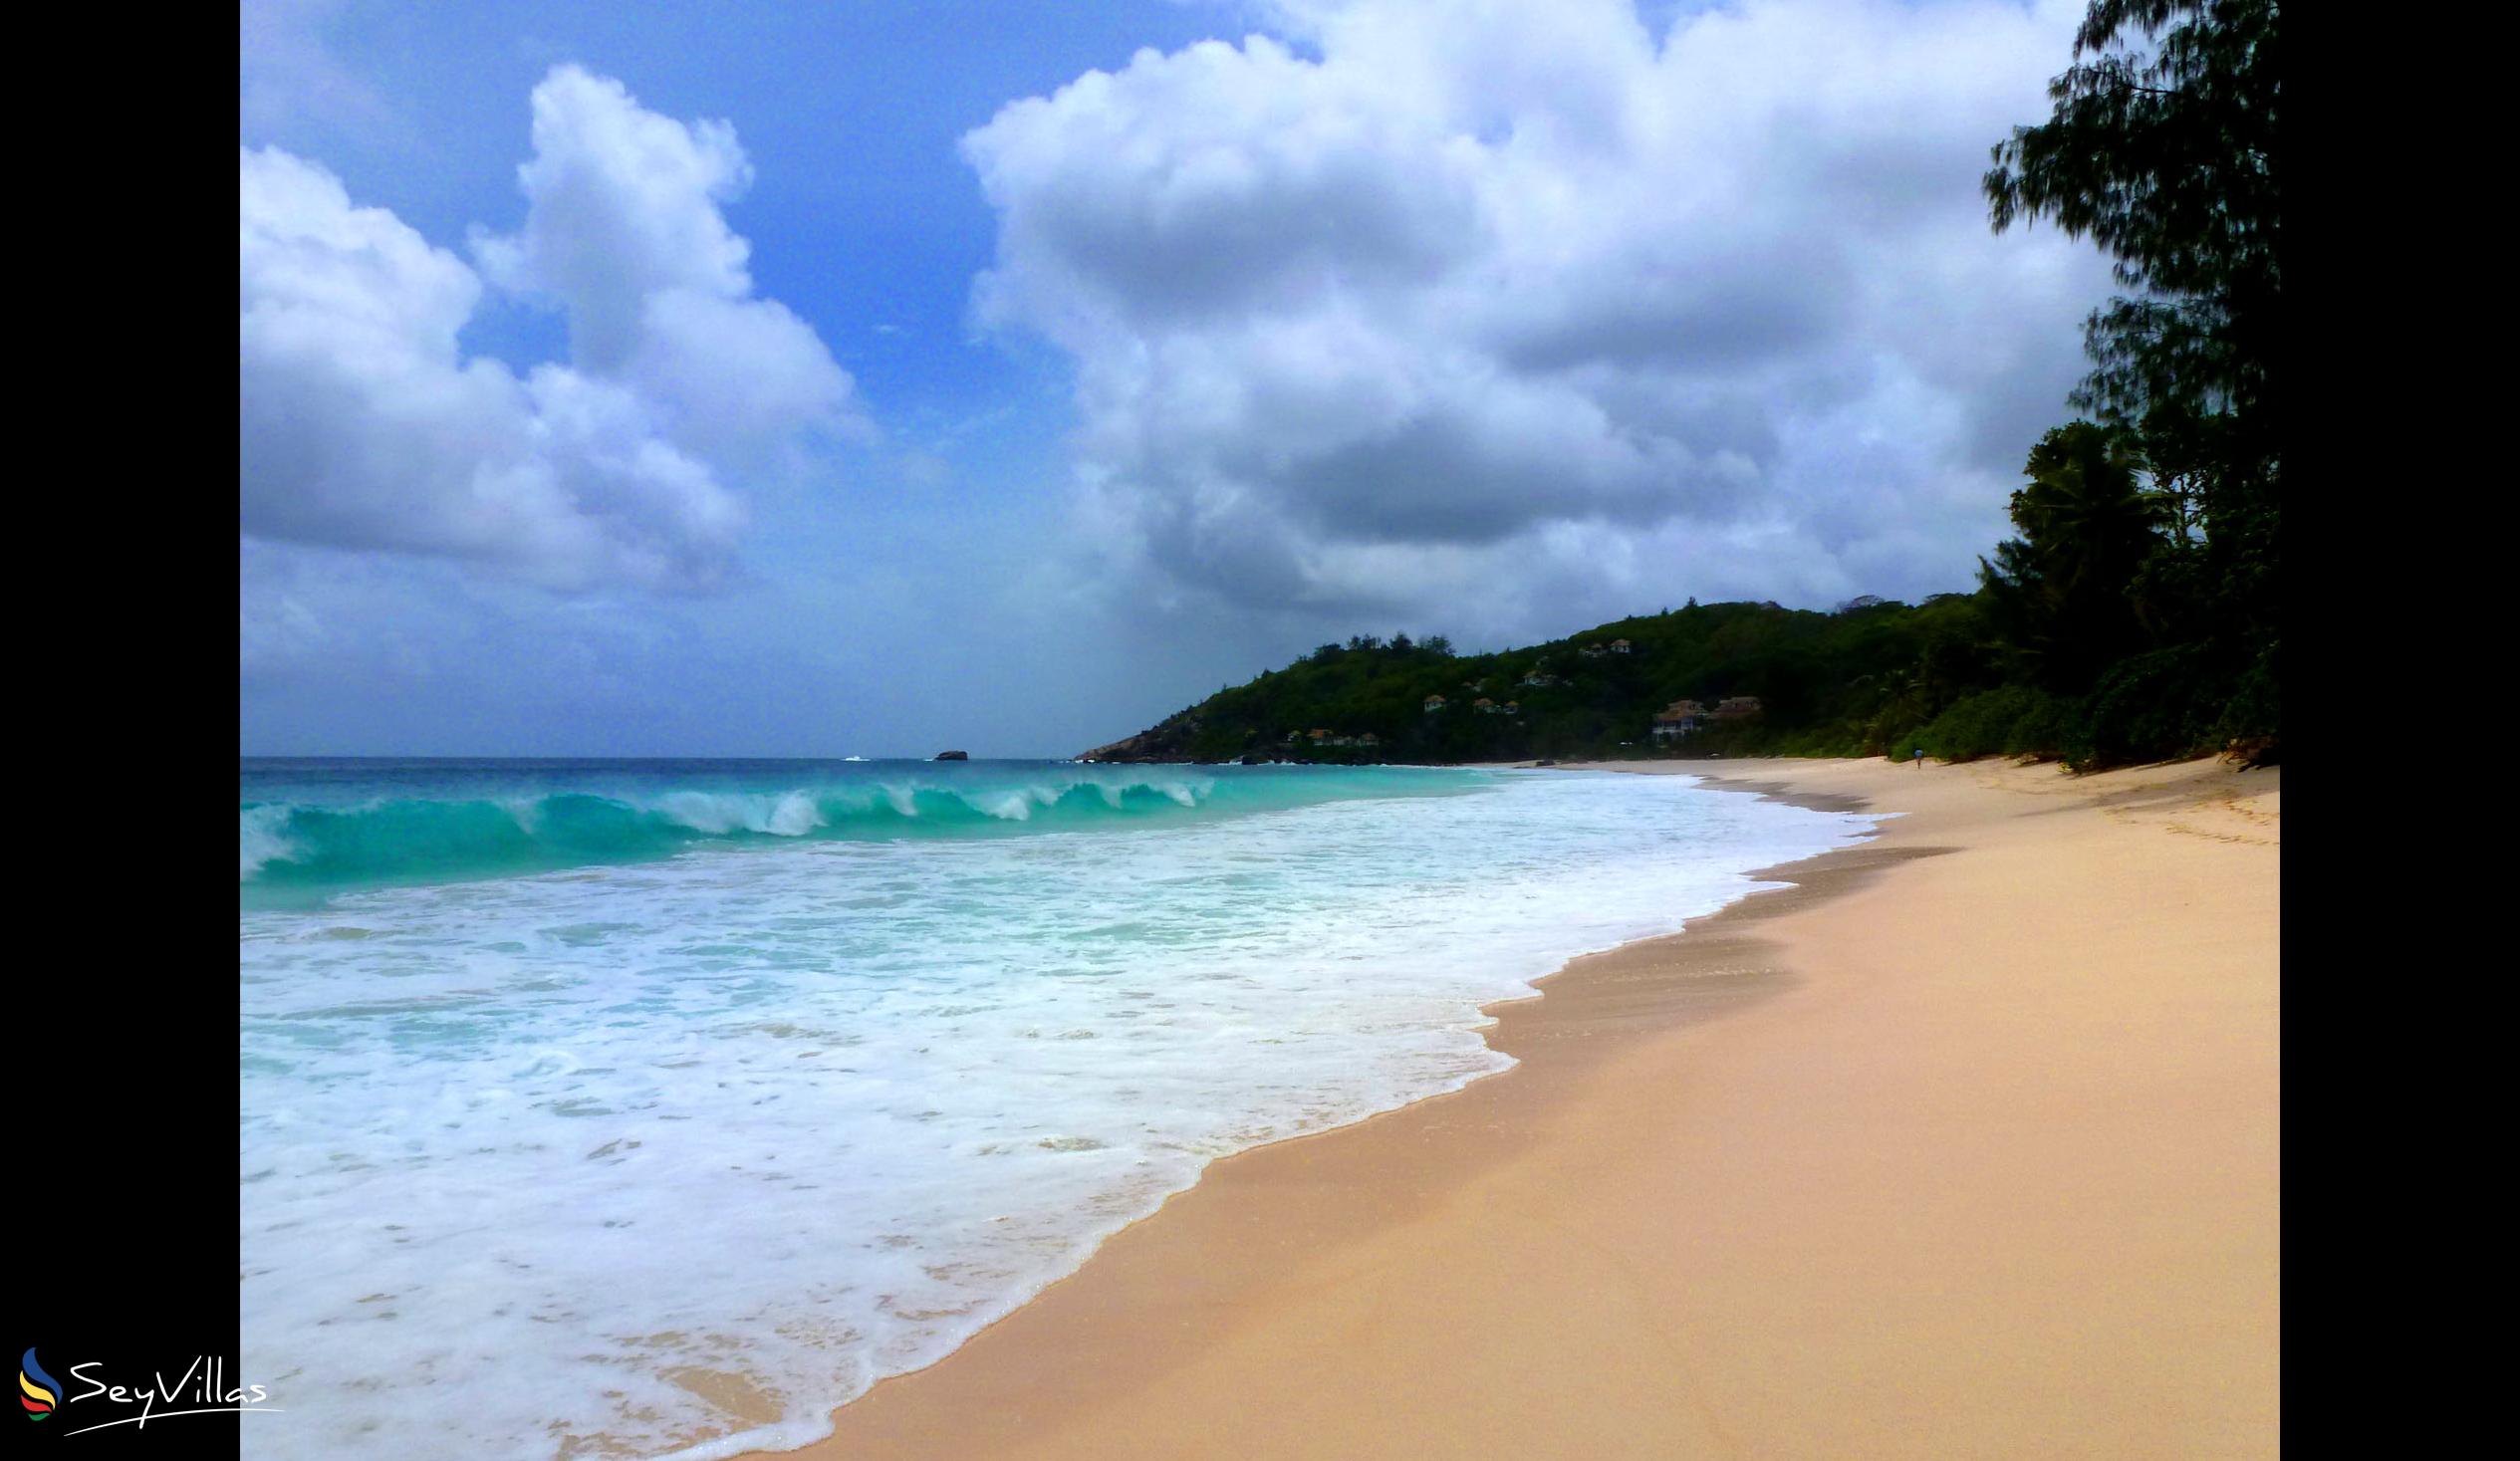 Photo 32: Coté Sud - Beaches - Mahé (Seychelles)